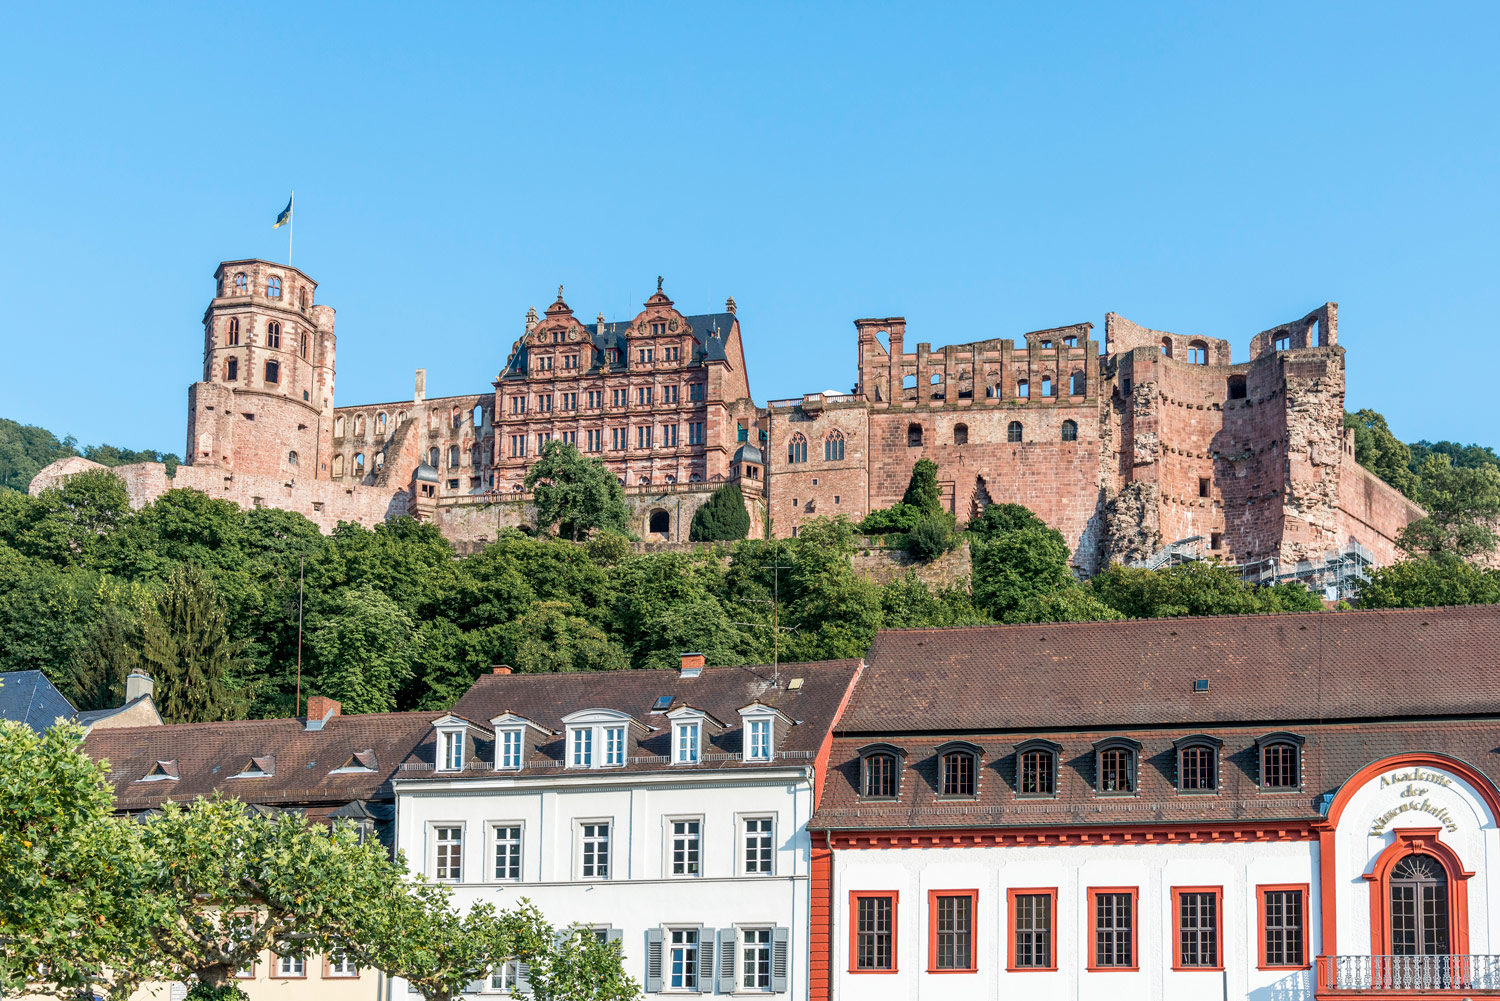 Ausblick auf das Heidelberger Schloss welches oberhalb auf einem Berg liegt. Unterhalb des Schlosses stehen normale Wohnhäuser.